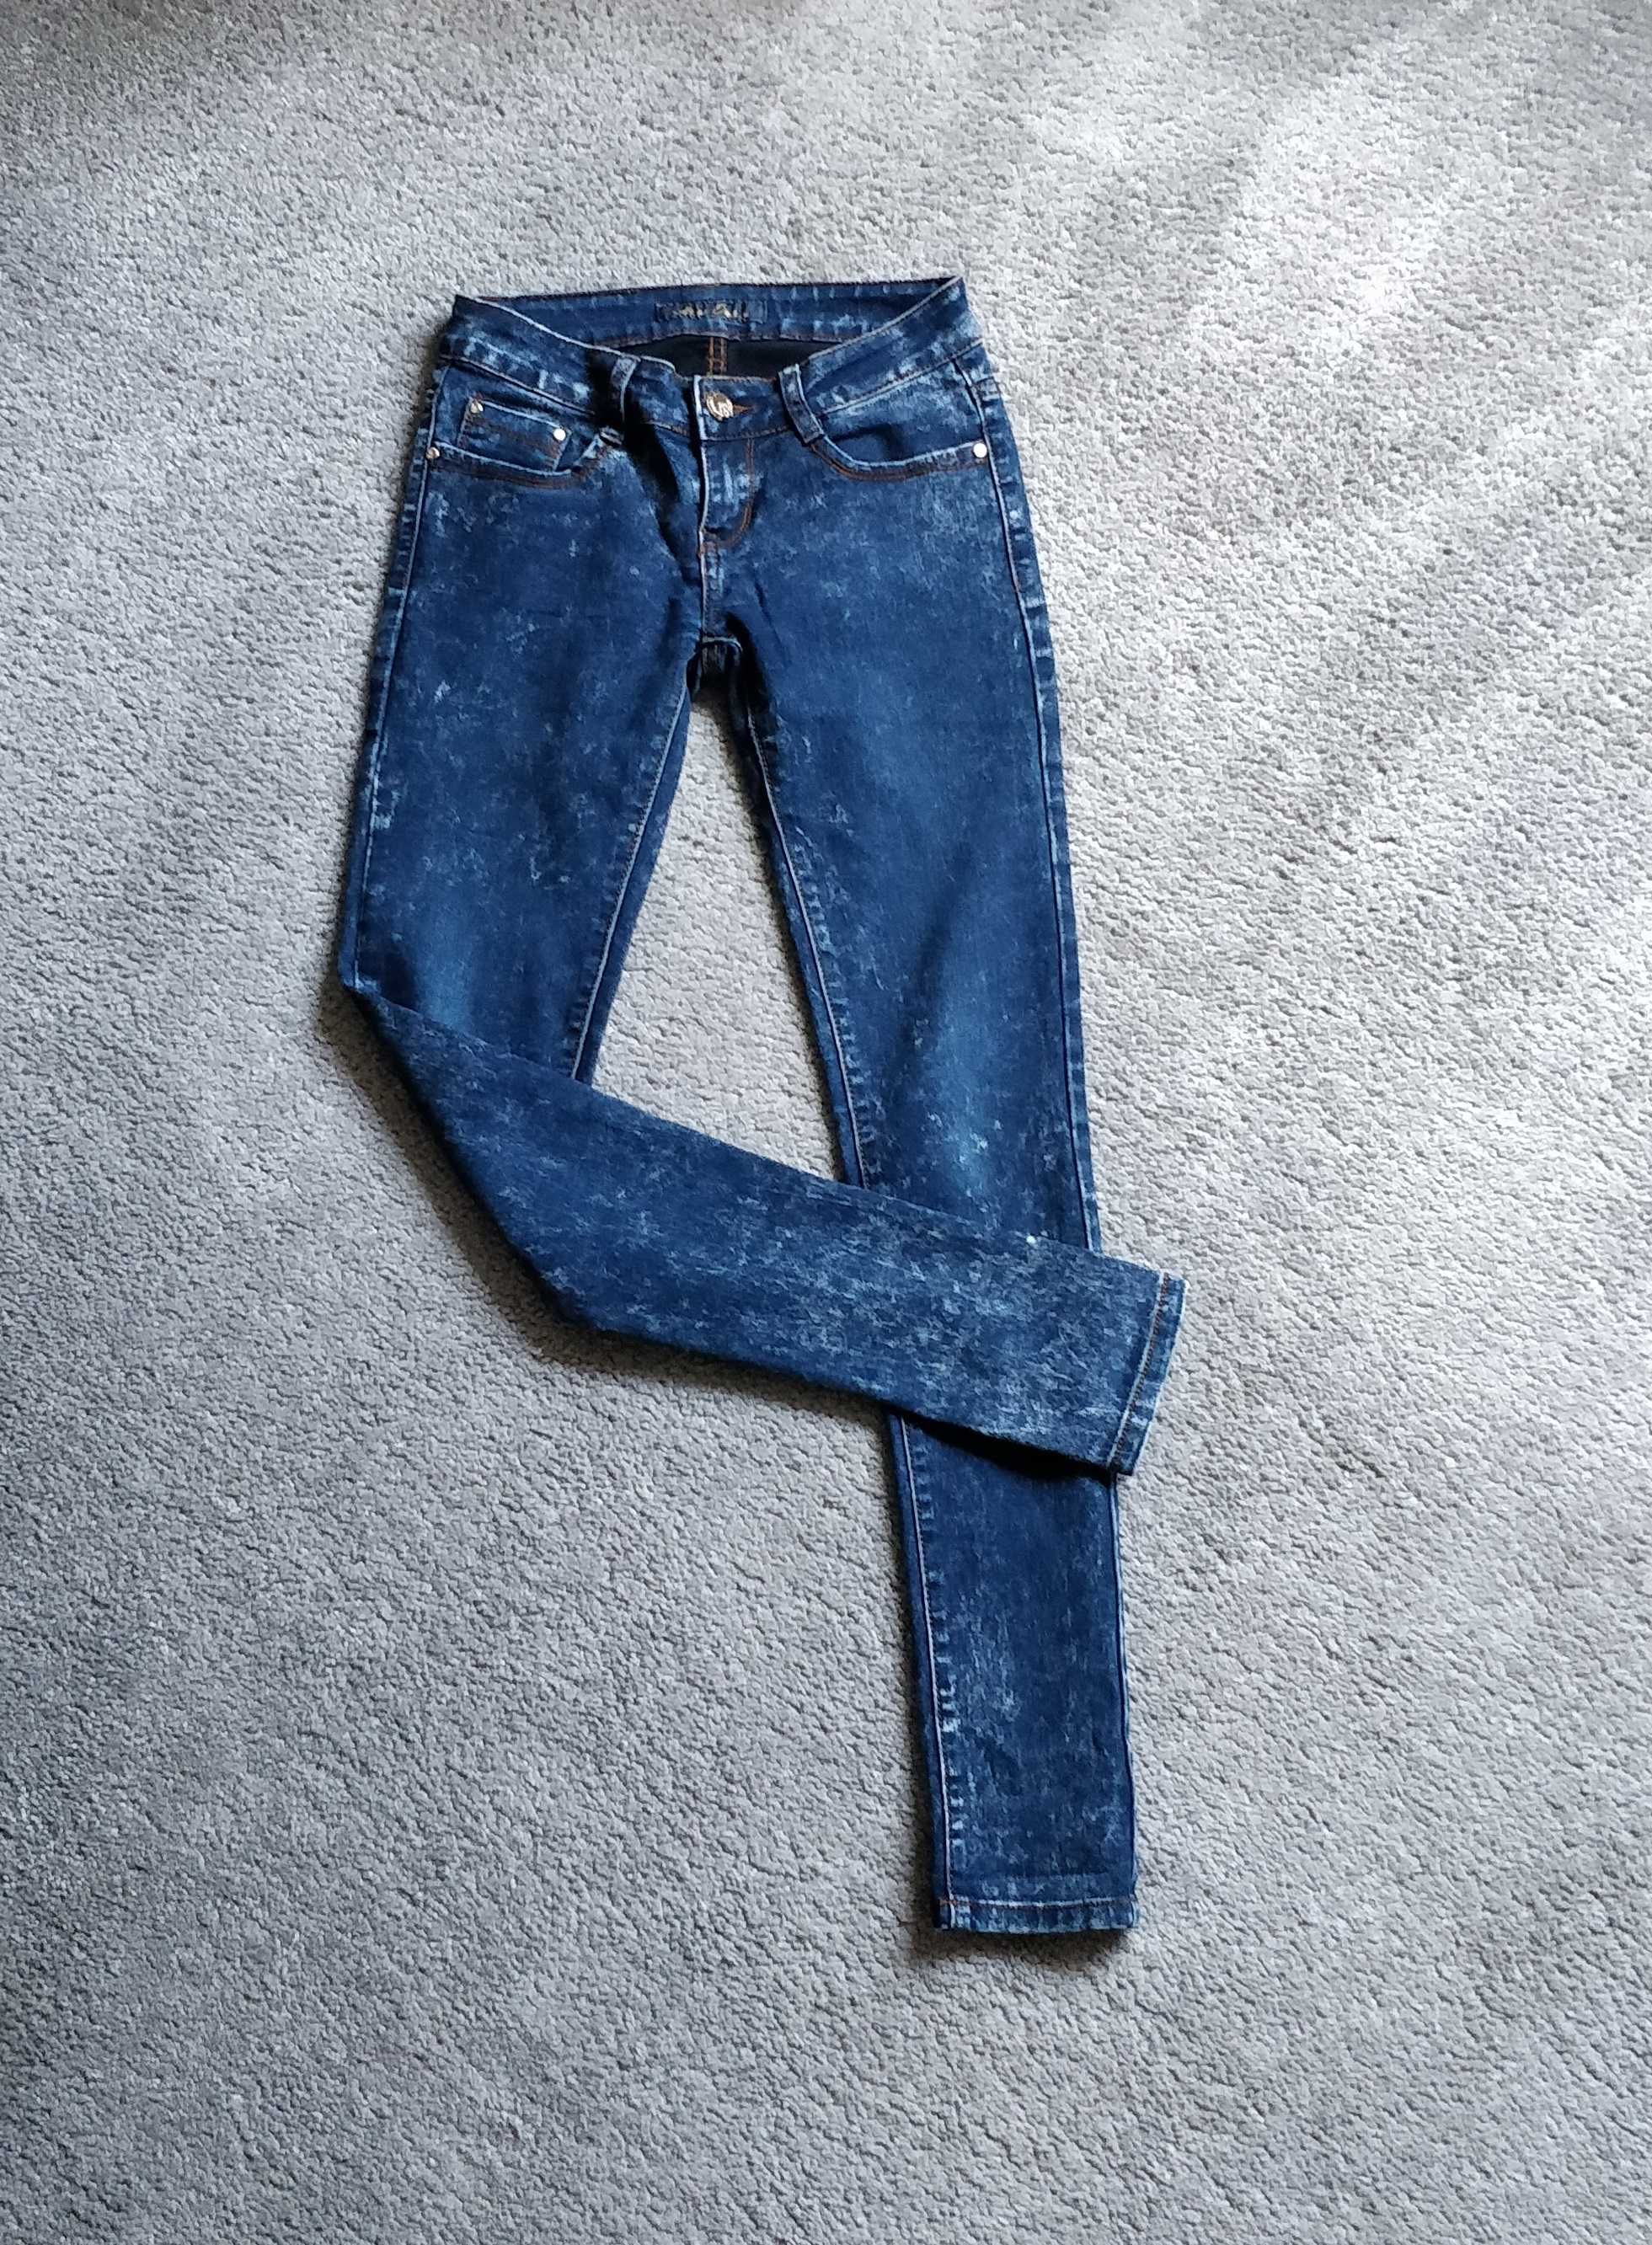 Spodnie jeansowe Miss One, rozmiar 36 (S), damskie, skinny.